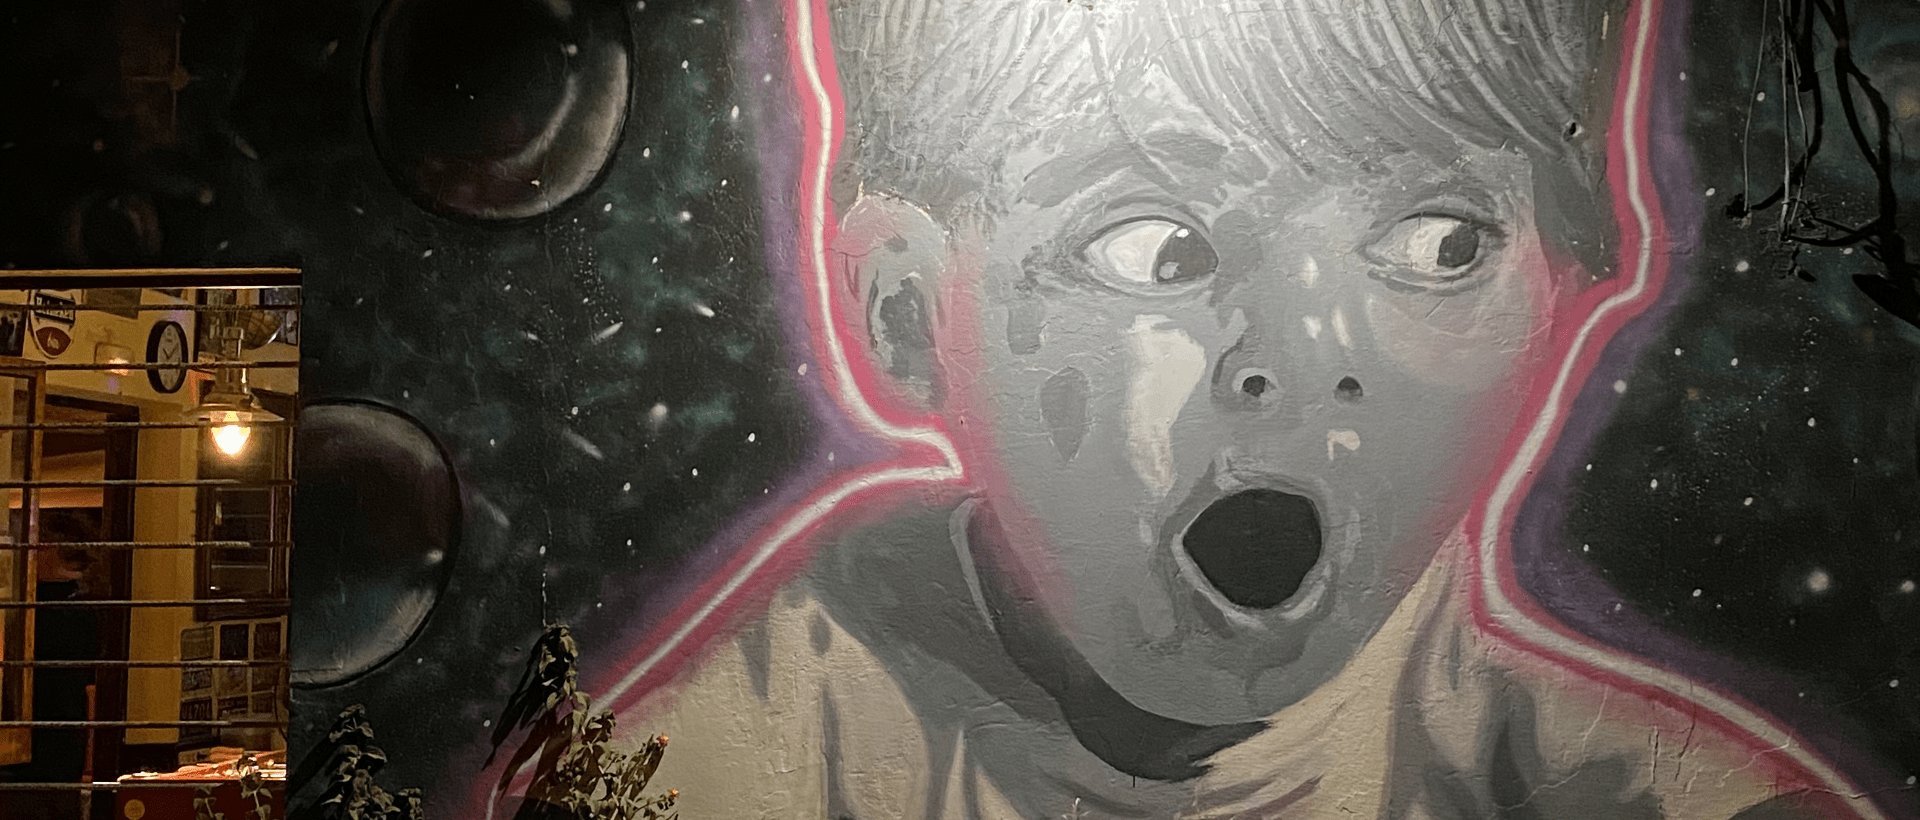 Erstaunter Junge - Graffiti